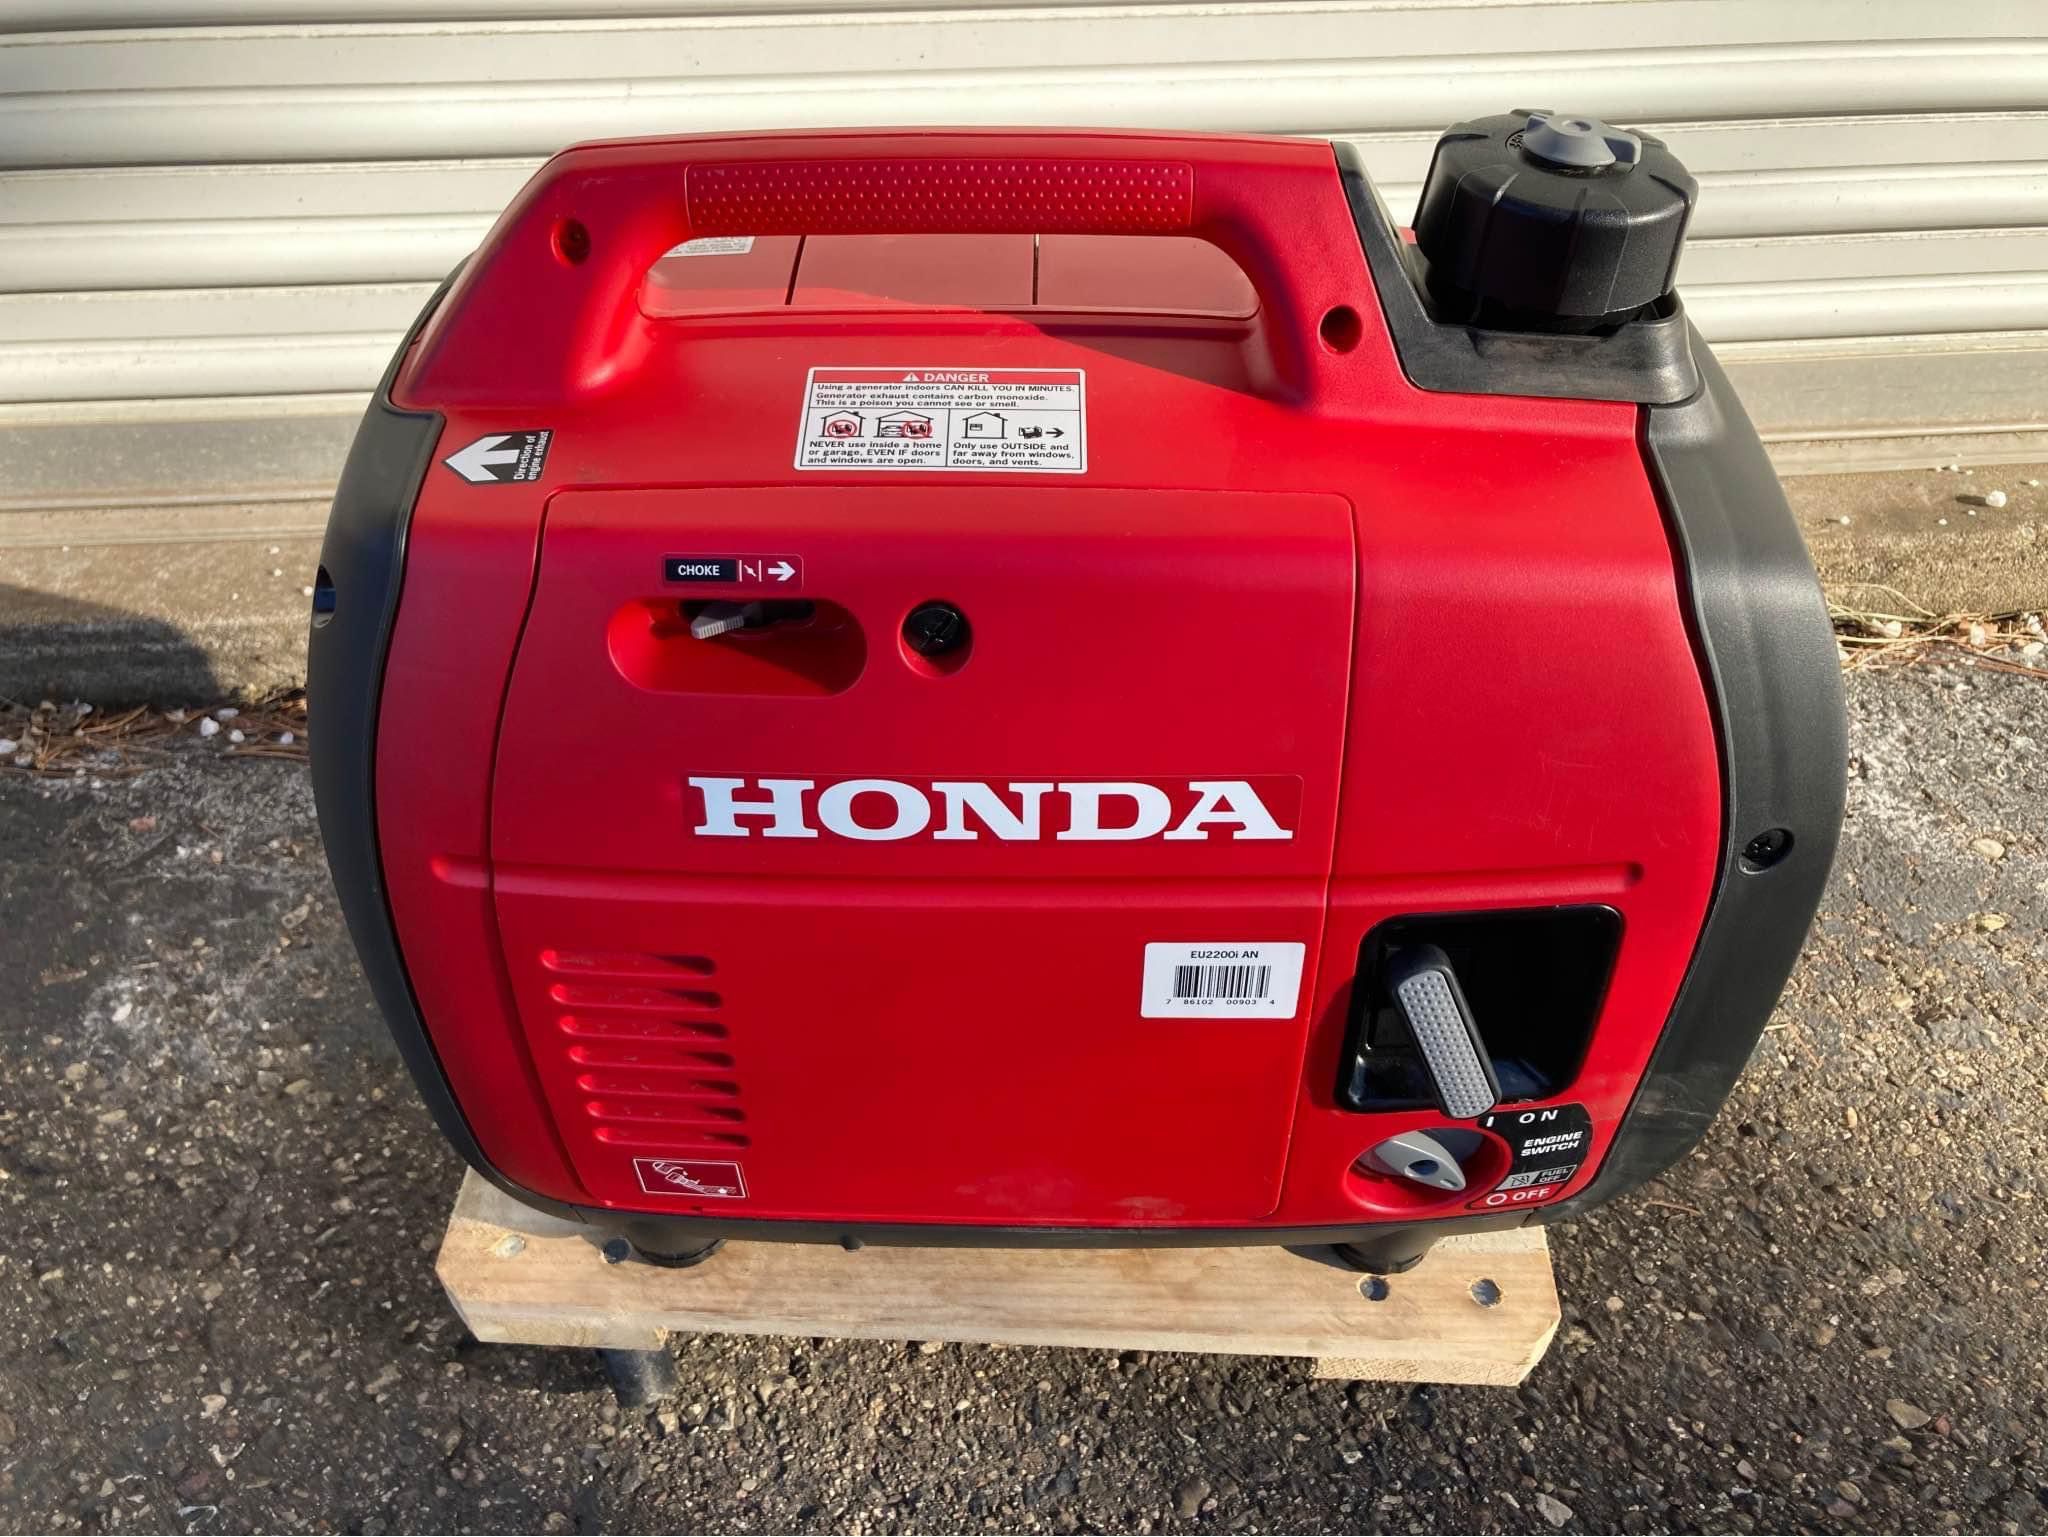 Honda Eu2200i generator